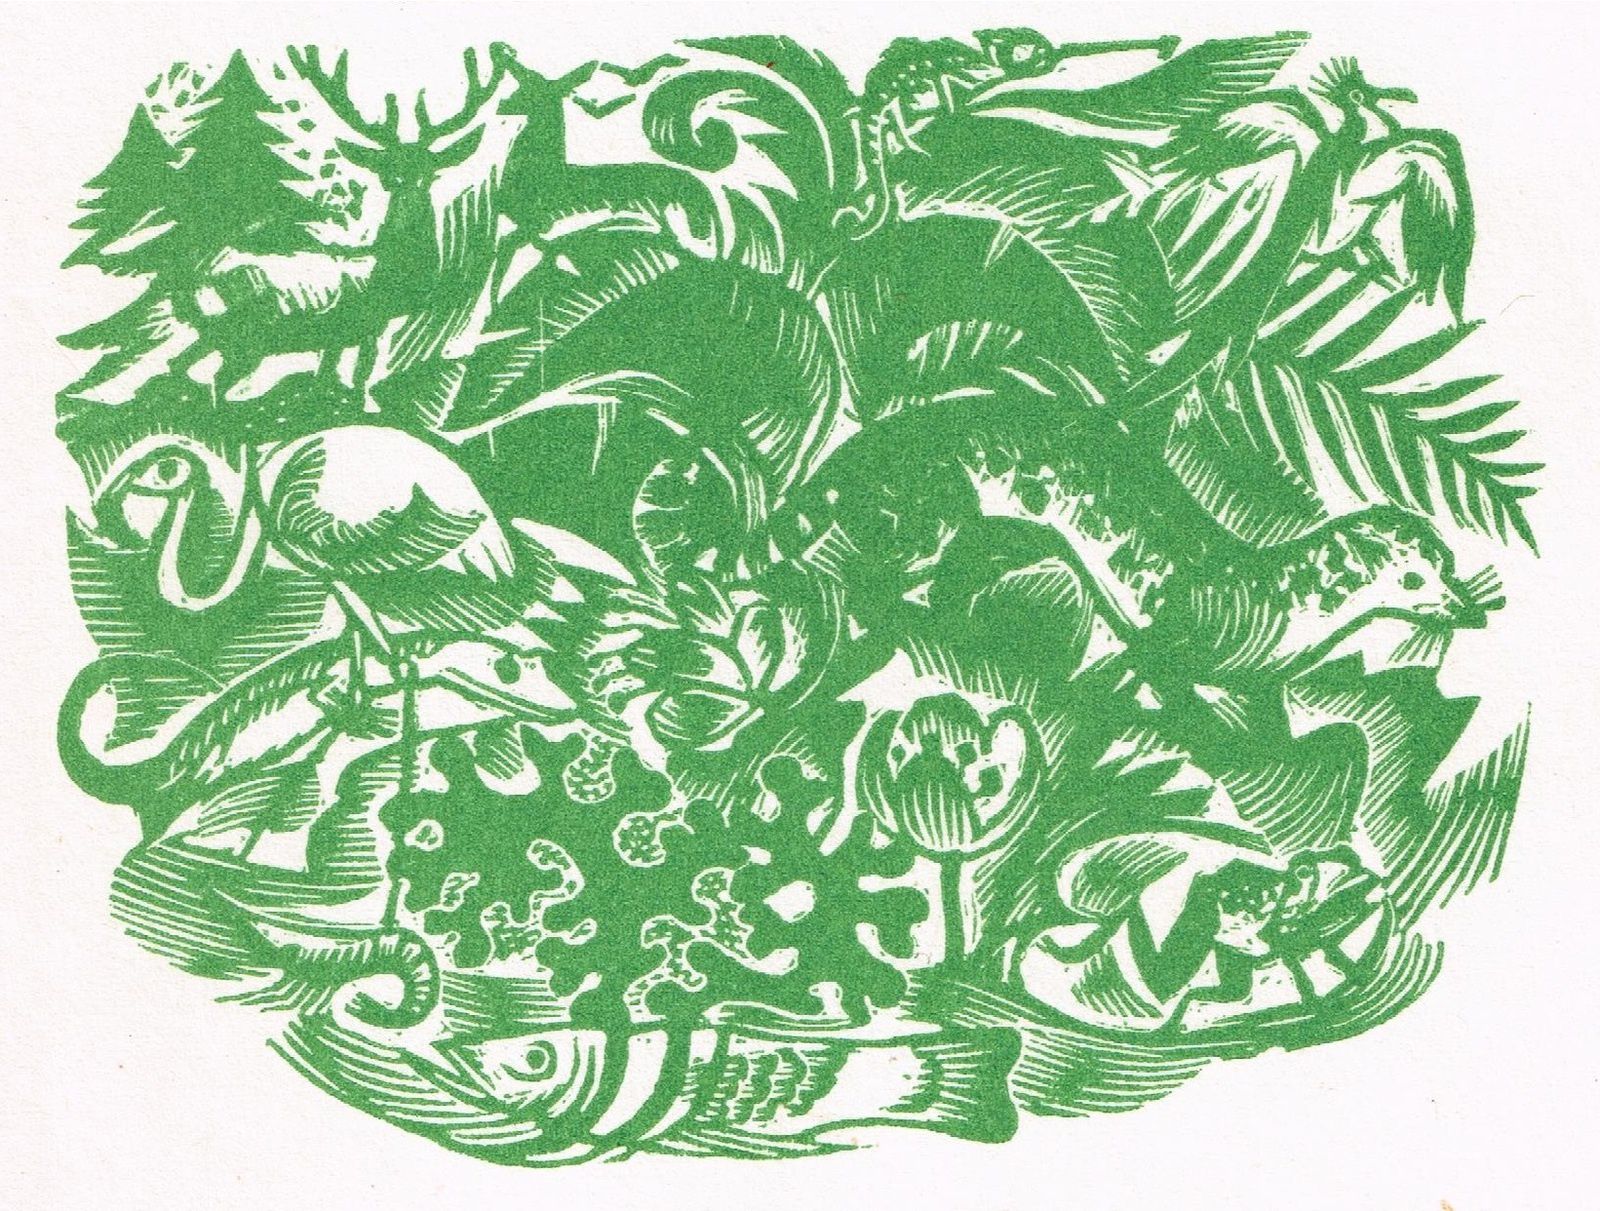 Frontispice des "Livres de nature", la célèbre collection créée par Jacques Delamain chez Stock, dans les années 1920.